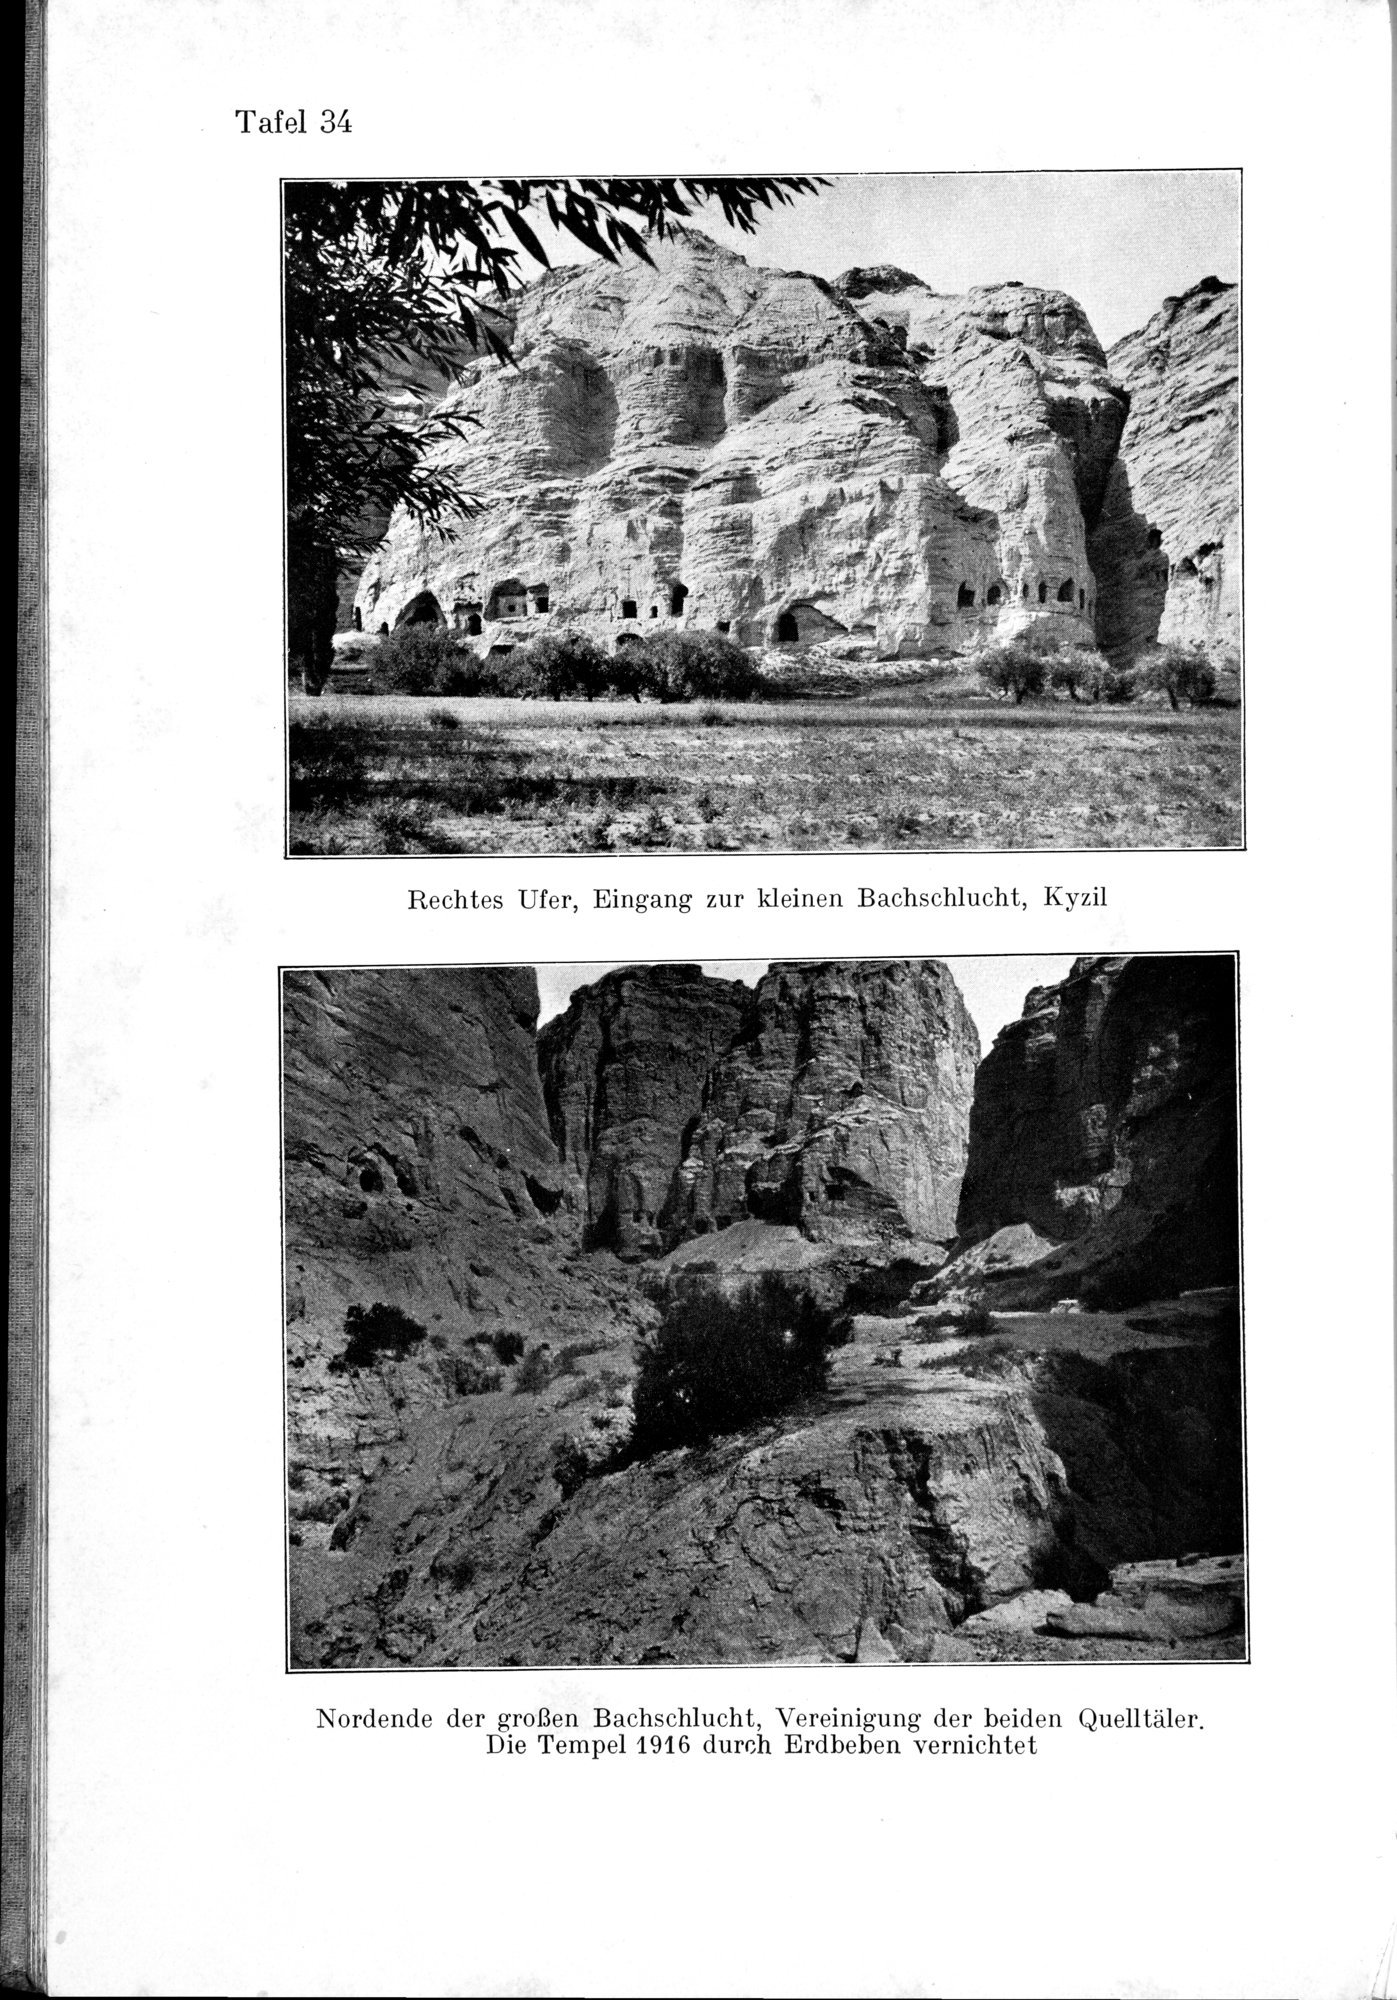 Auf Hellas Spuren in Ostturkistan : vol.1 / Page 154 (Grayscale High Resolution Image)